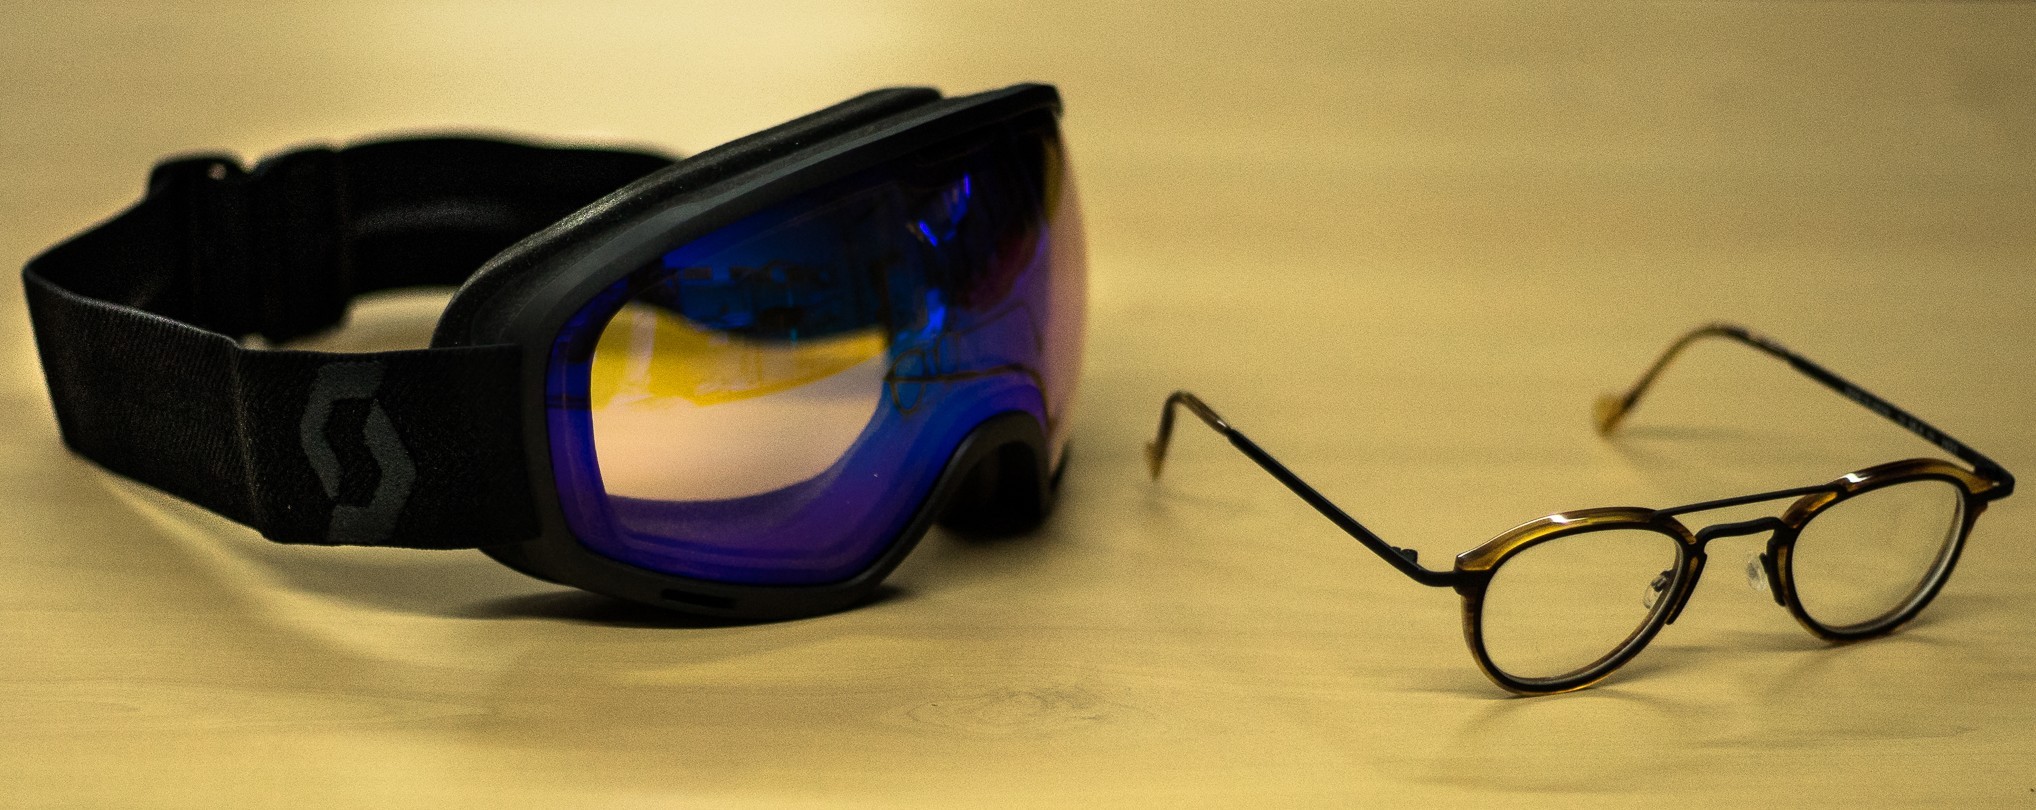 Findway Masque de Ski Protection pour Enfant Lunette Ski Masque Ski OTG de  Garçon ou Fille Anti-UV Antibuée Compatible avec Casque pour Ski Snowboard  Autres Sports Hiver (Lentille argent (VLT 21%)) 